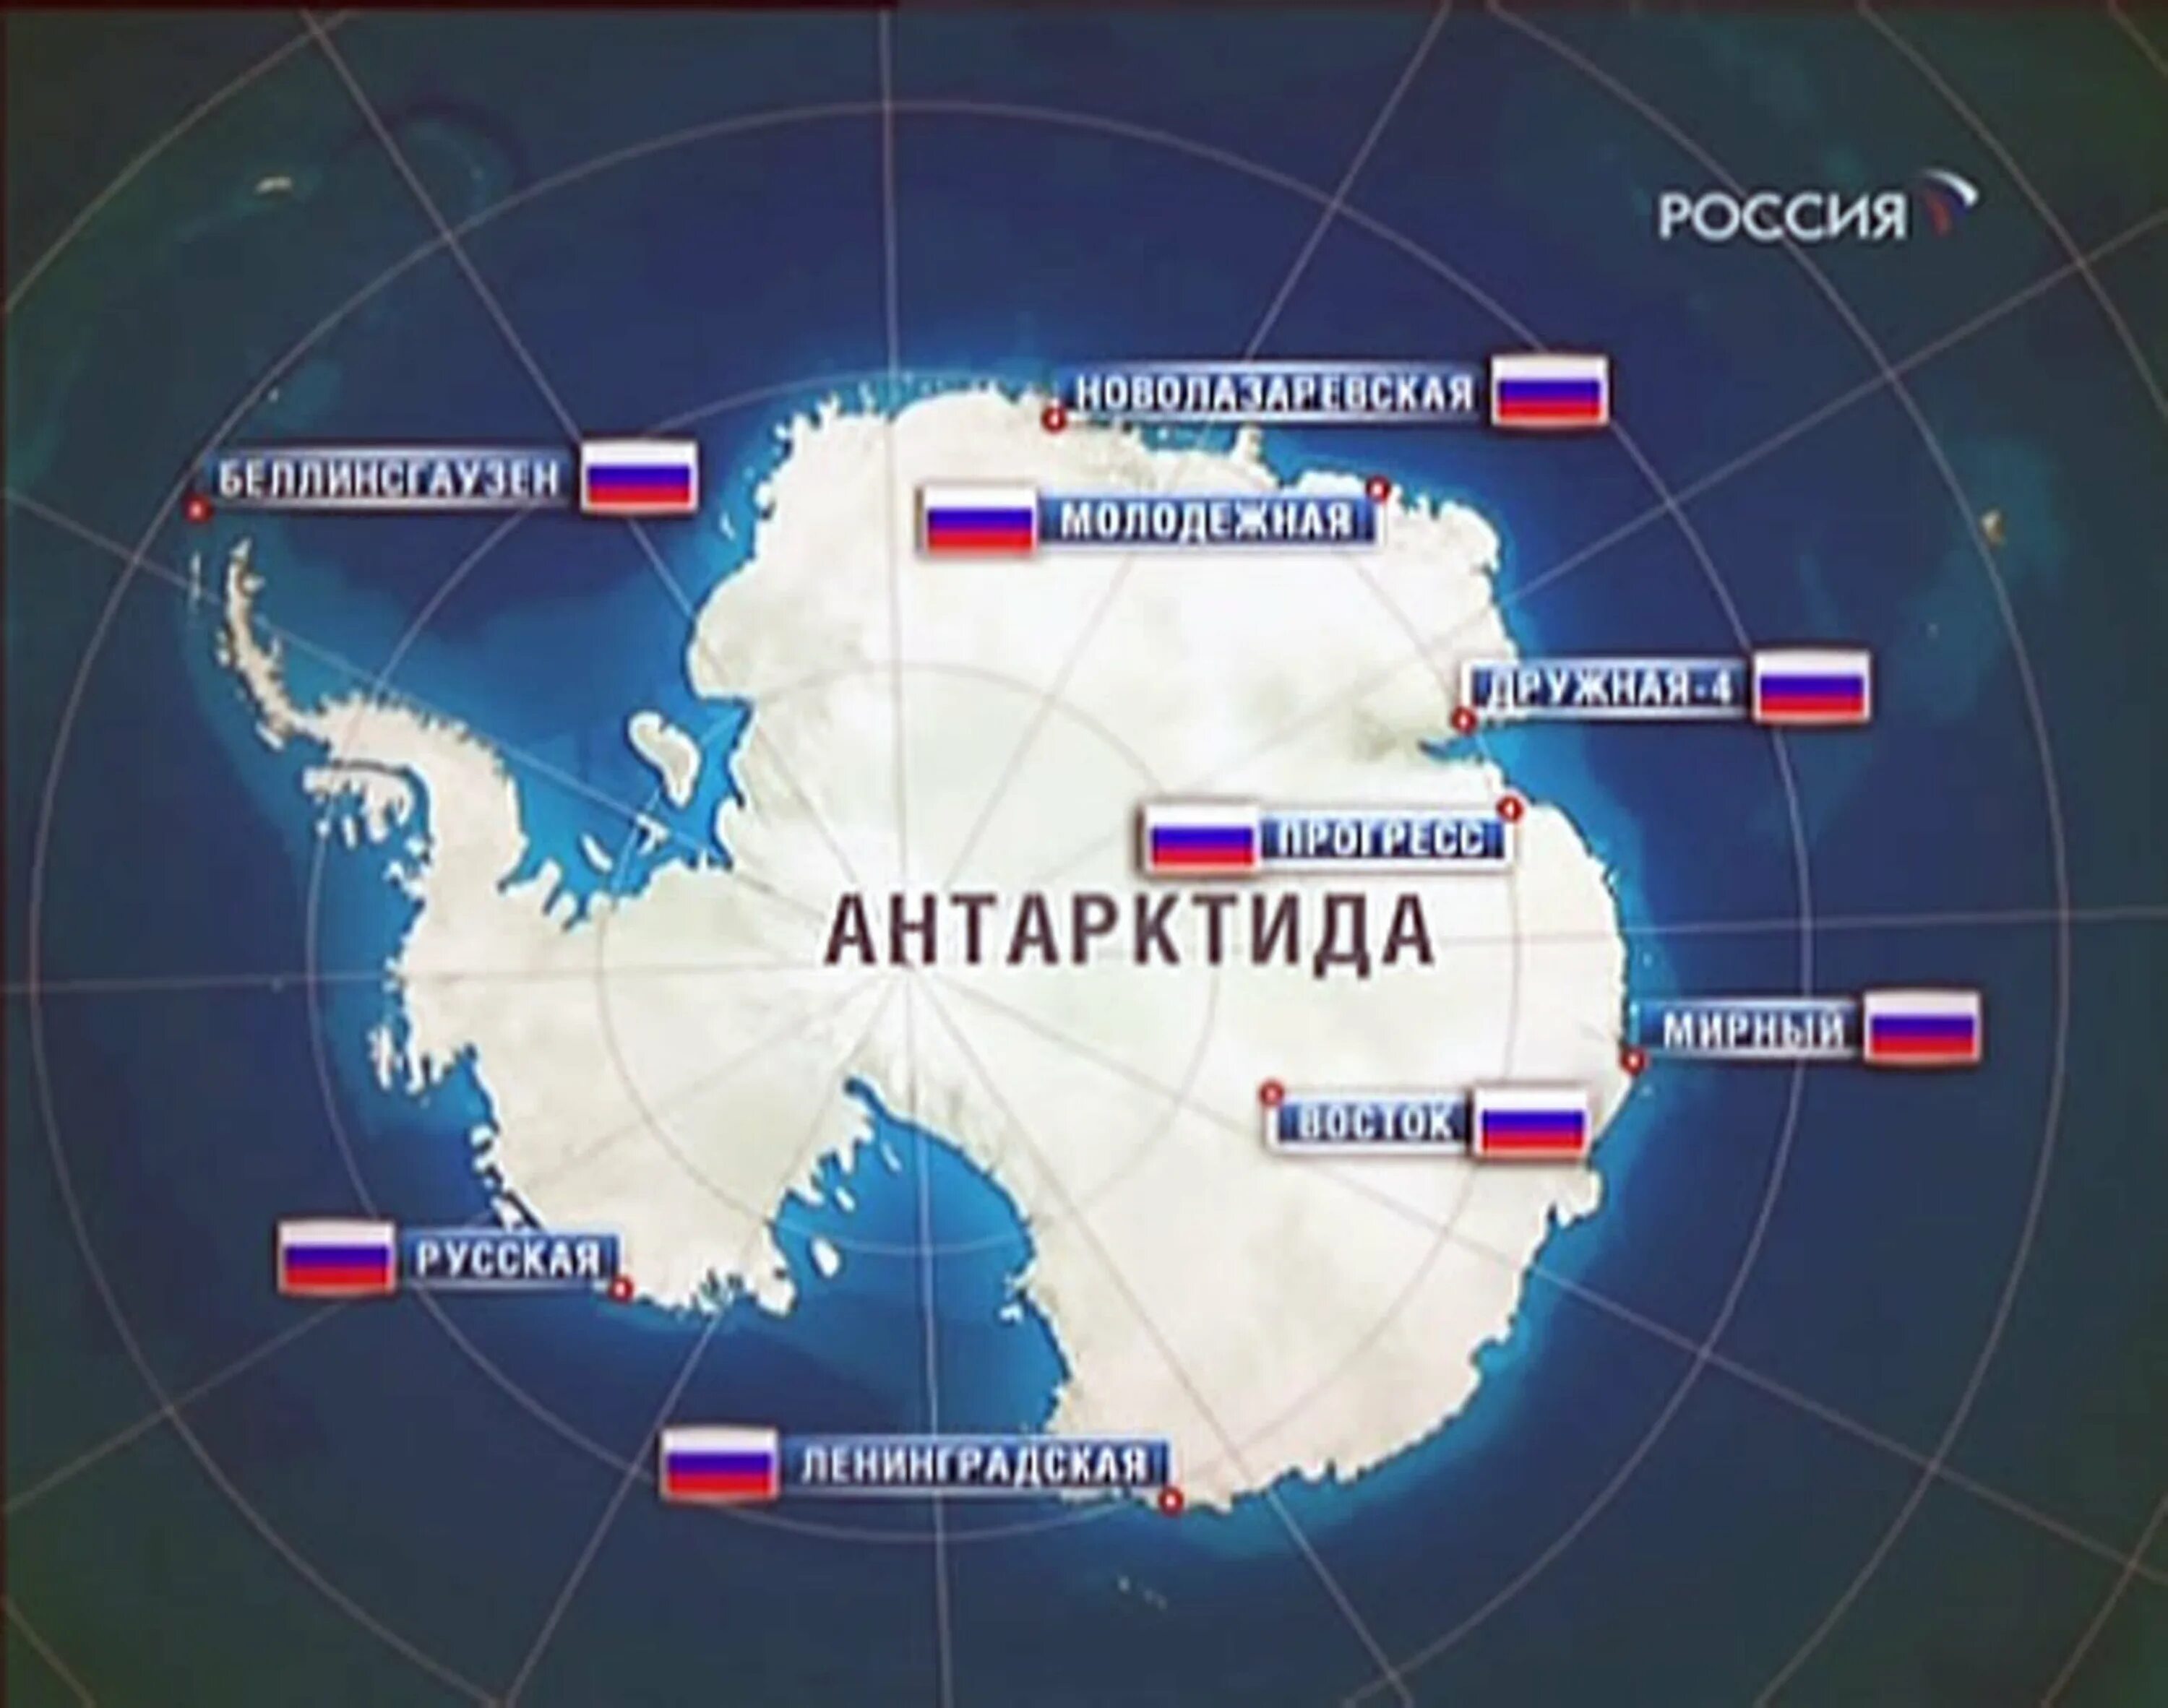 Сколько стран расположено на территории антарктиды. Новолазаревская станция в Антарктиде на карте. Научные станции России в Антарктиде на карте. Антарктические Полярные станции на карте. Полярные станции в Антарктиде на карте.